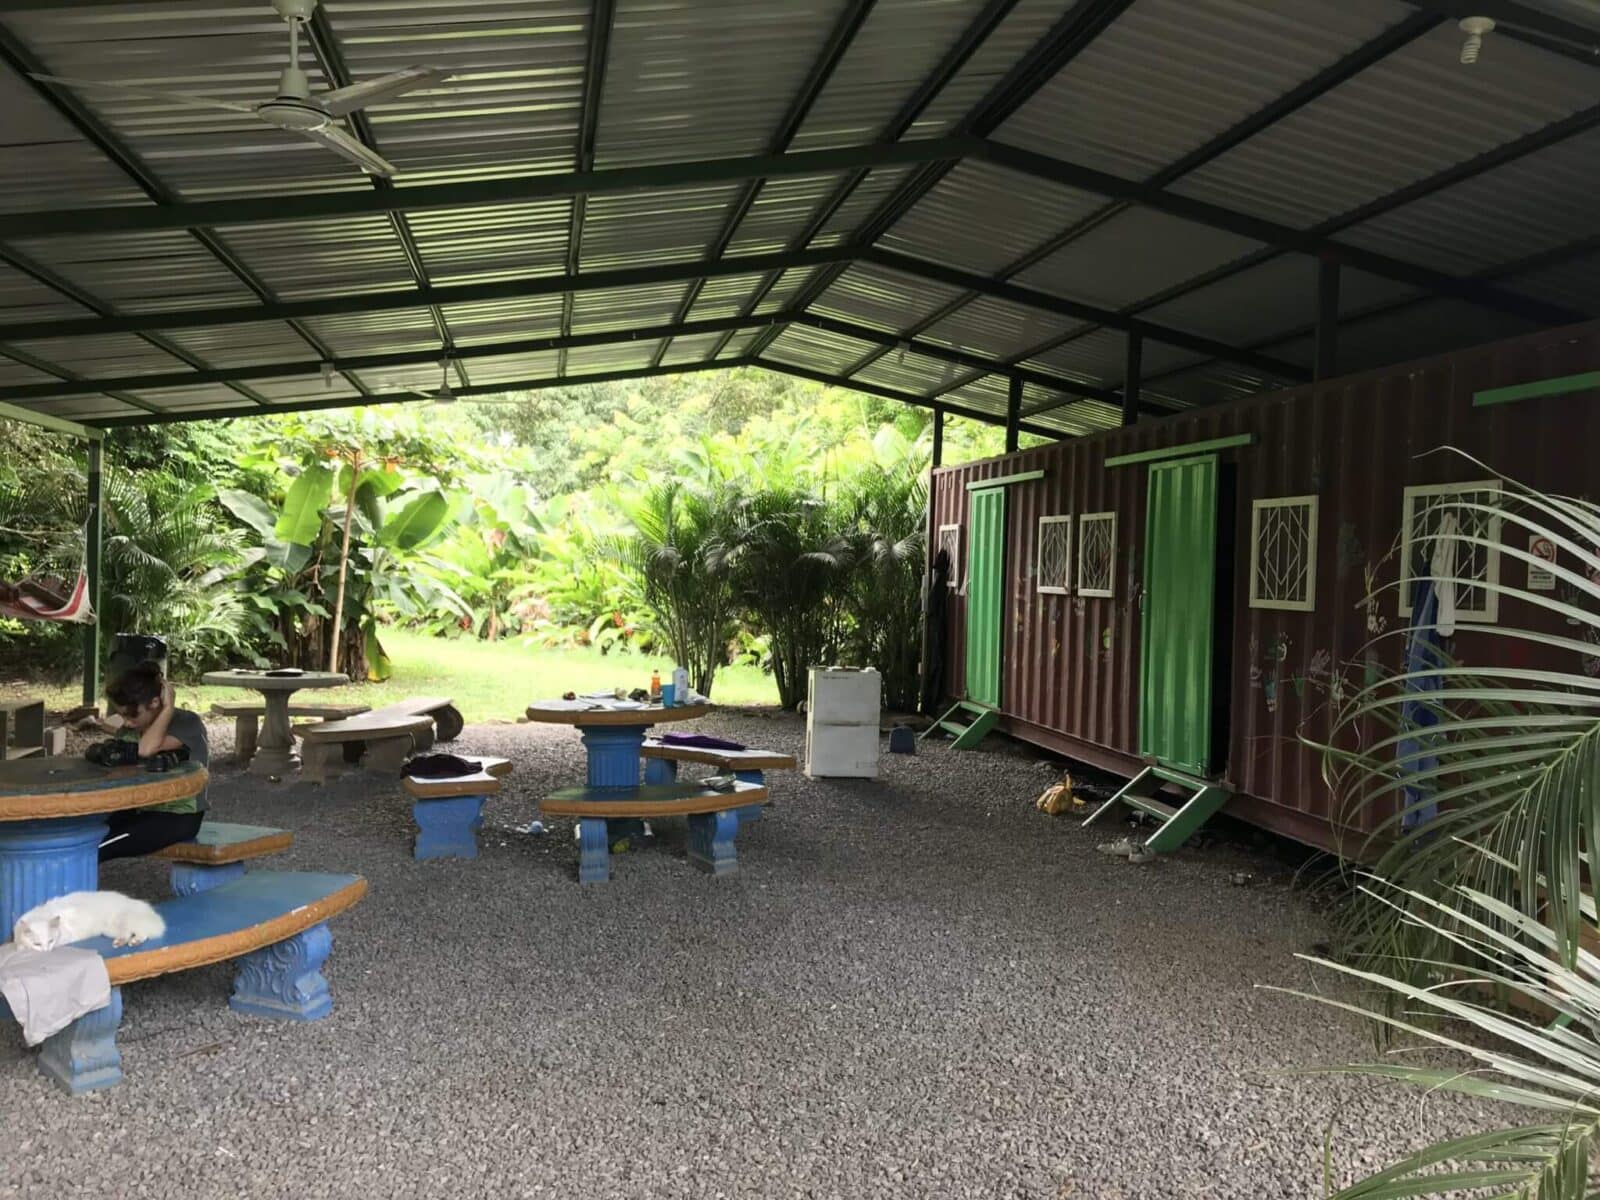 NATUWA volunteer facilities